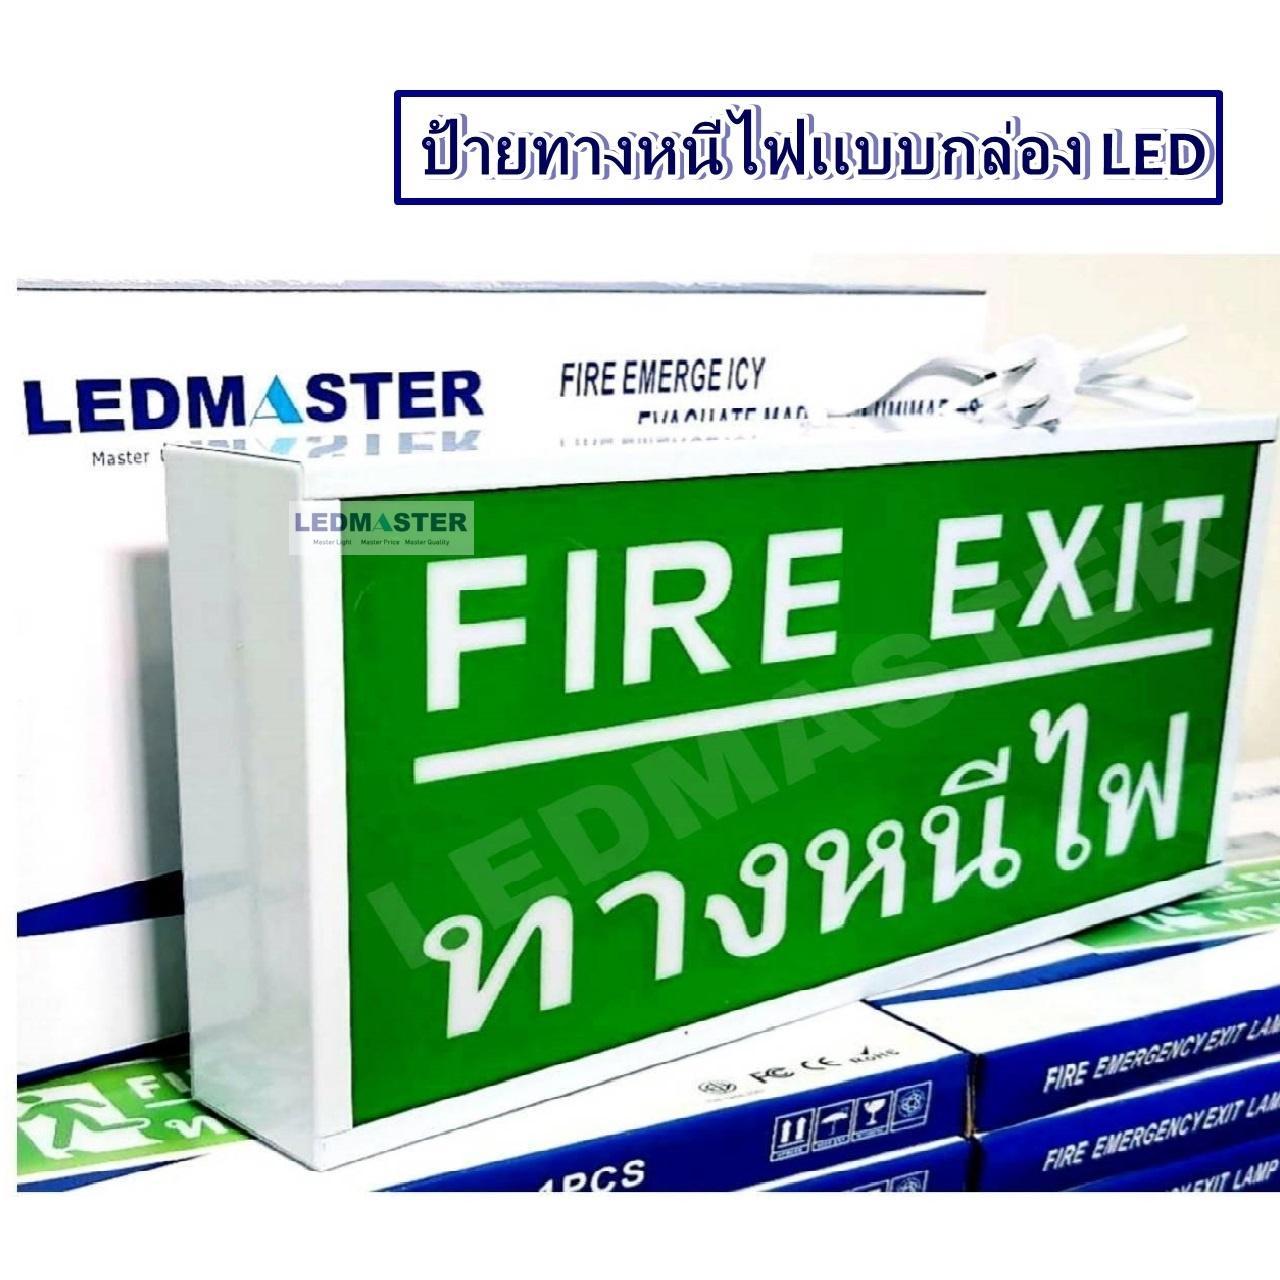 กล่องป้ายทางออกฉุกเฉิน Emergency Exit Sign ป้ายสัญลักษณ์ทางออก ทางหนีไฟ (Fire Exit) ไฟฉุกเฉิน เมื่อเหตุการณ์ฉุกเฉิน ไฟดับ ไฟตก สามารถสำรองไฟได้ ชนิด 1 หน้า ชนิดแขวน รุ่น ข้อความ FIRE EXIT ทางหนีไฟ LMT06